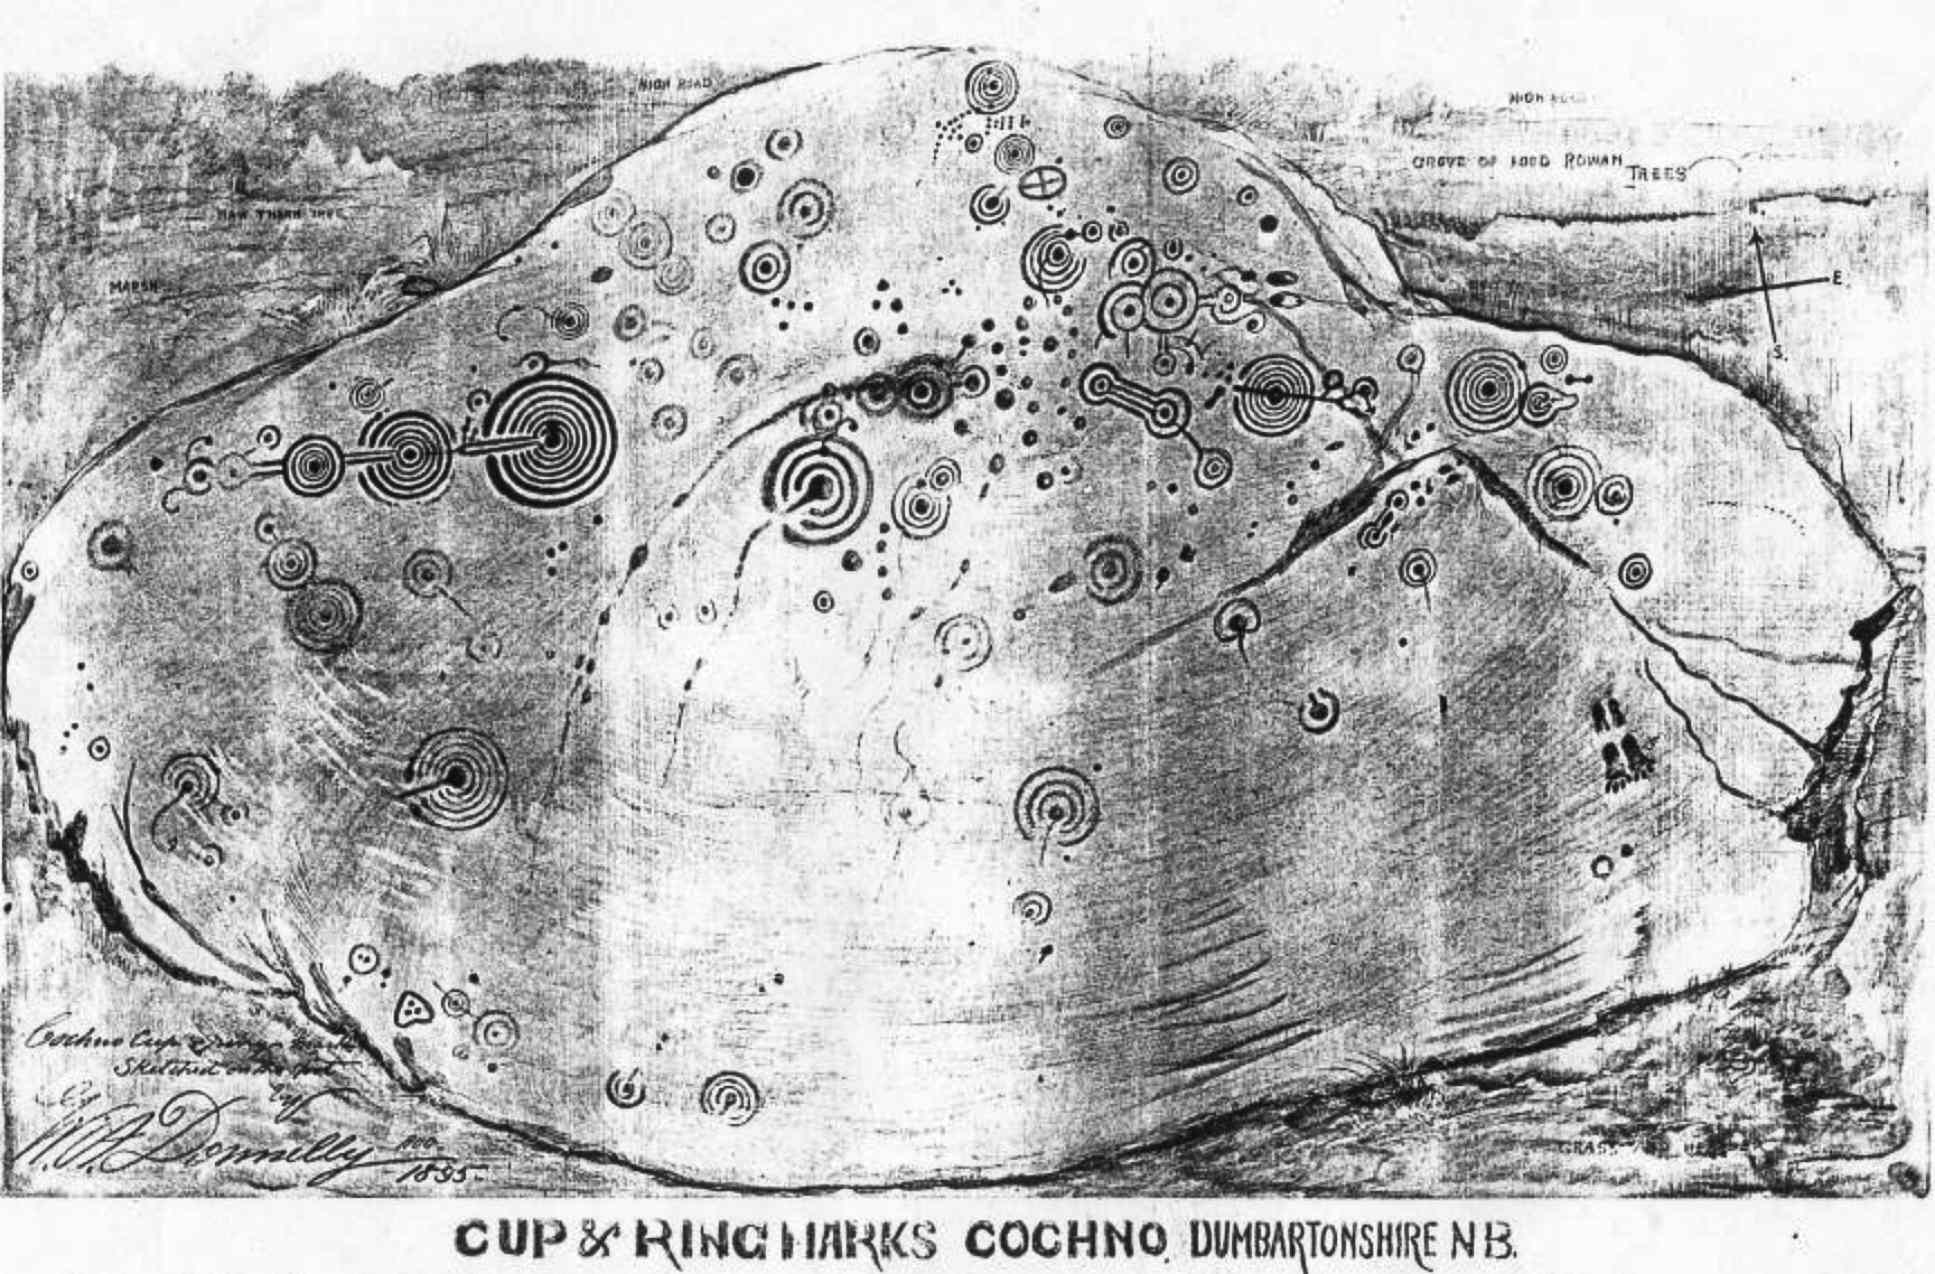 A Sketch of the Cochno Stone විසින් 1895 දී WA Donnelly විසින්